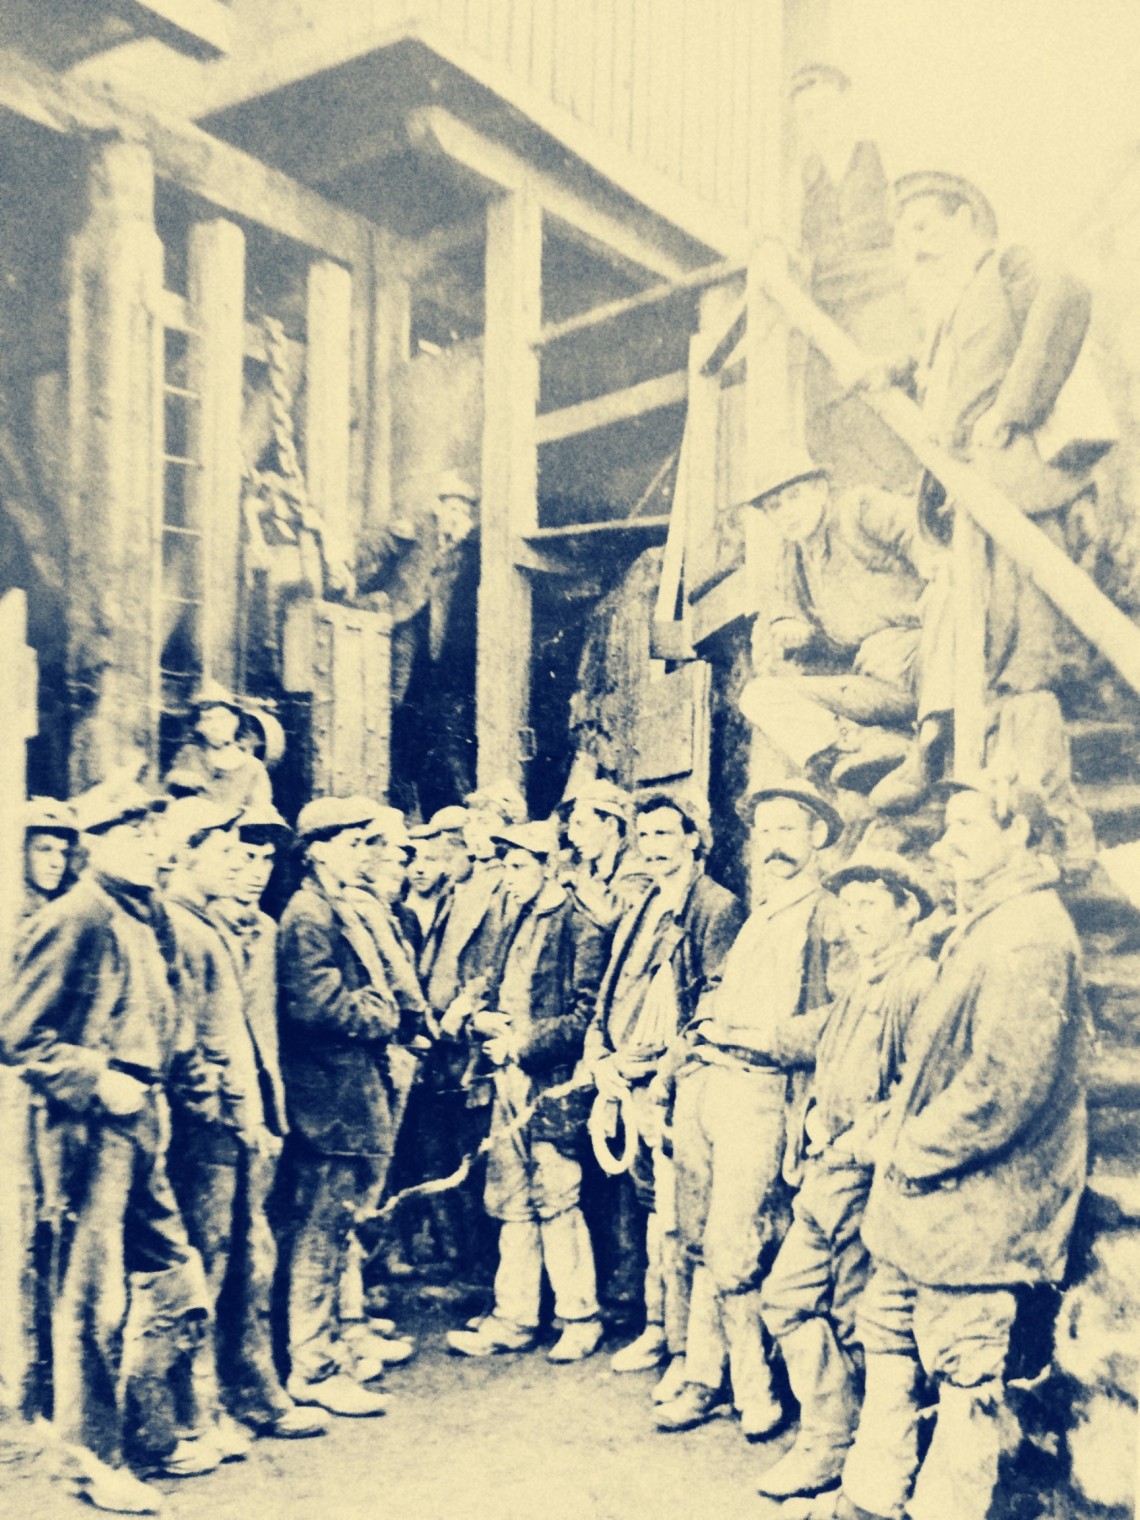 miners cornwall